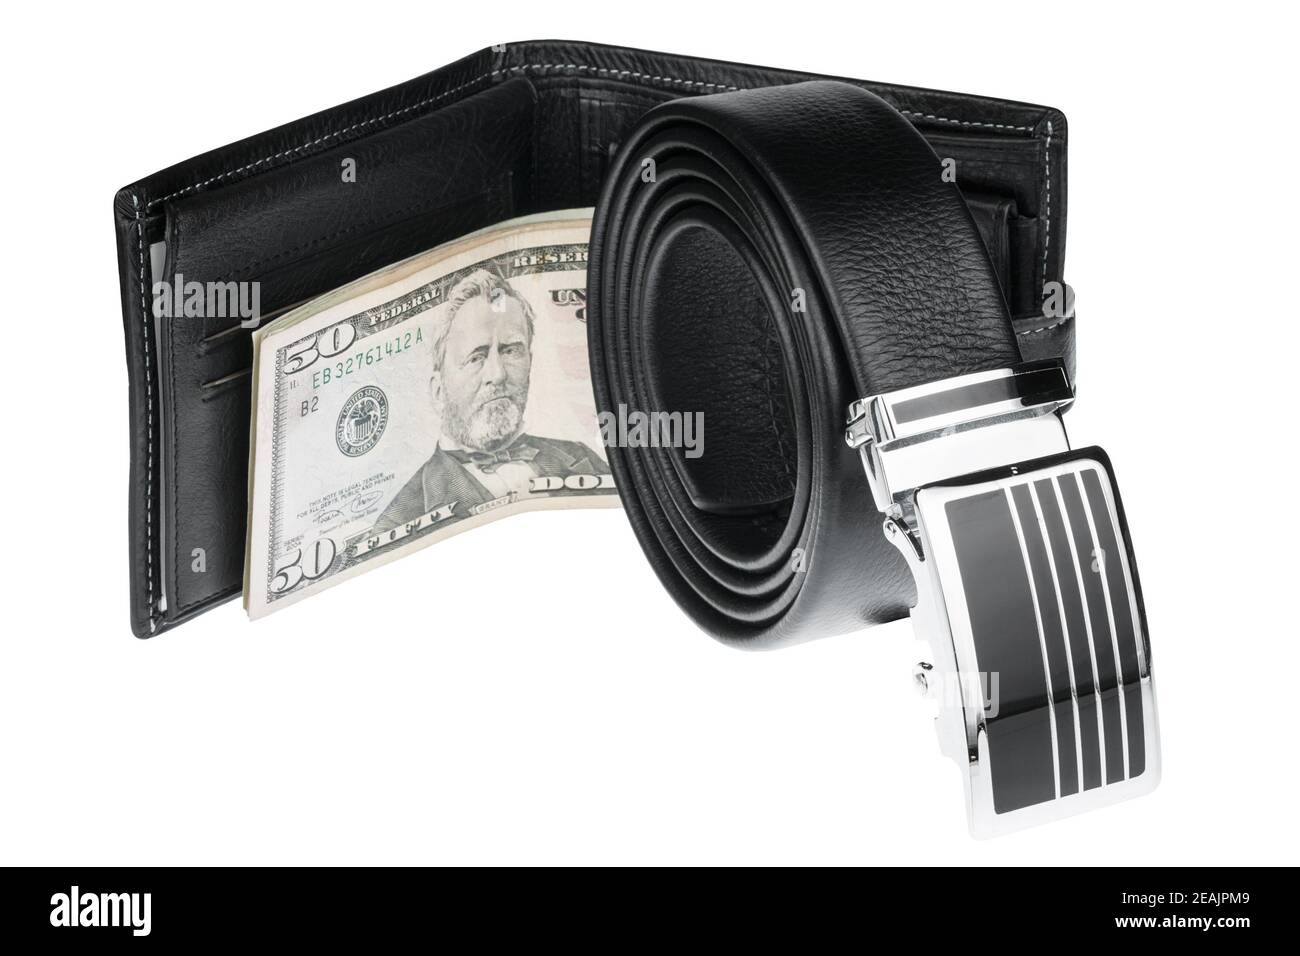 Men's belt, wallet with money Stock Photo